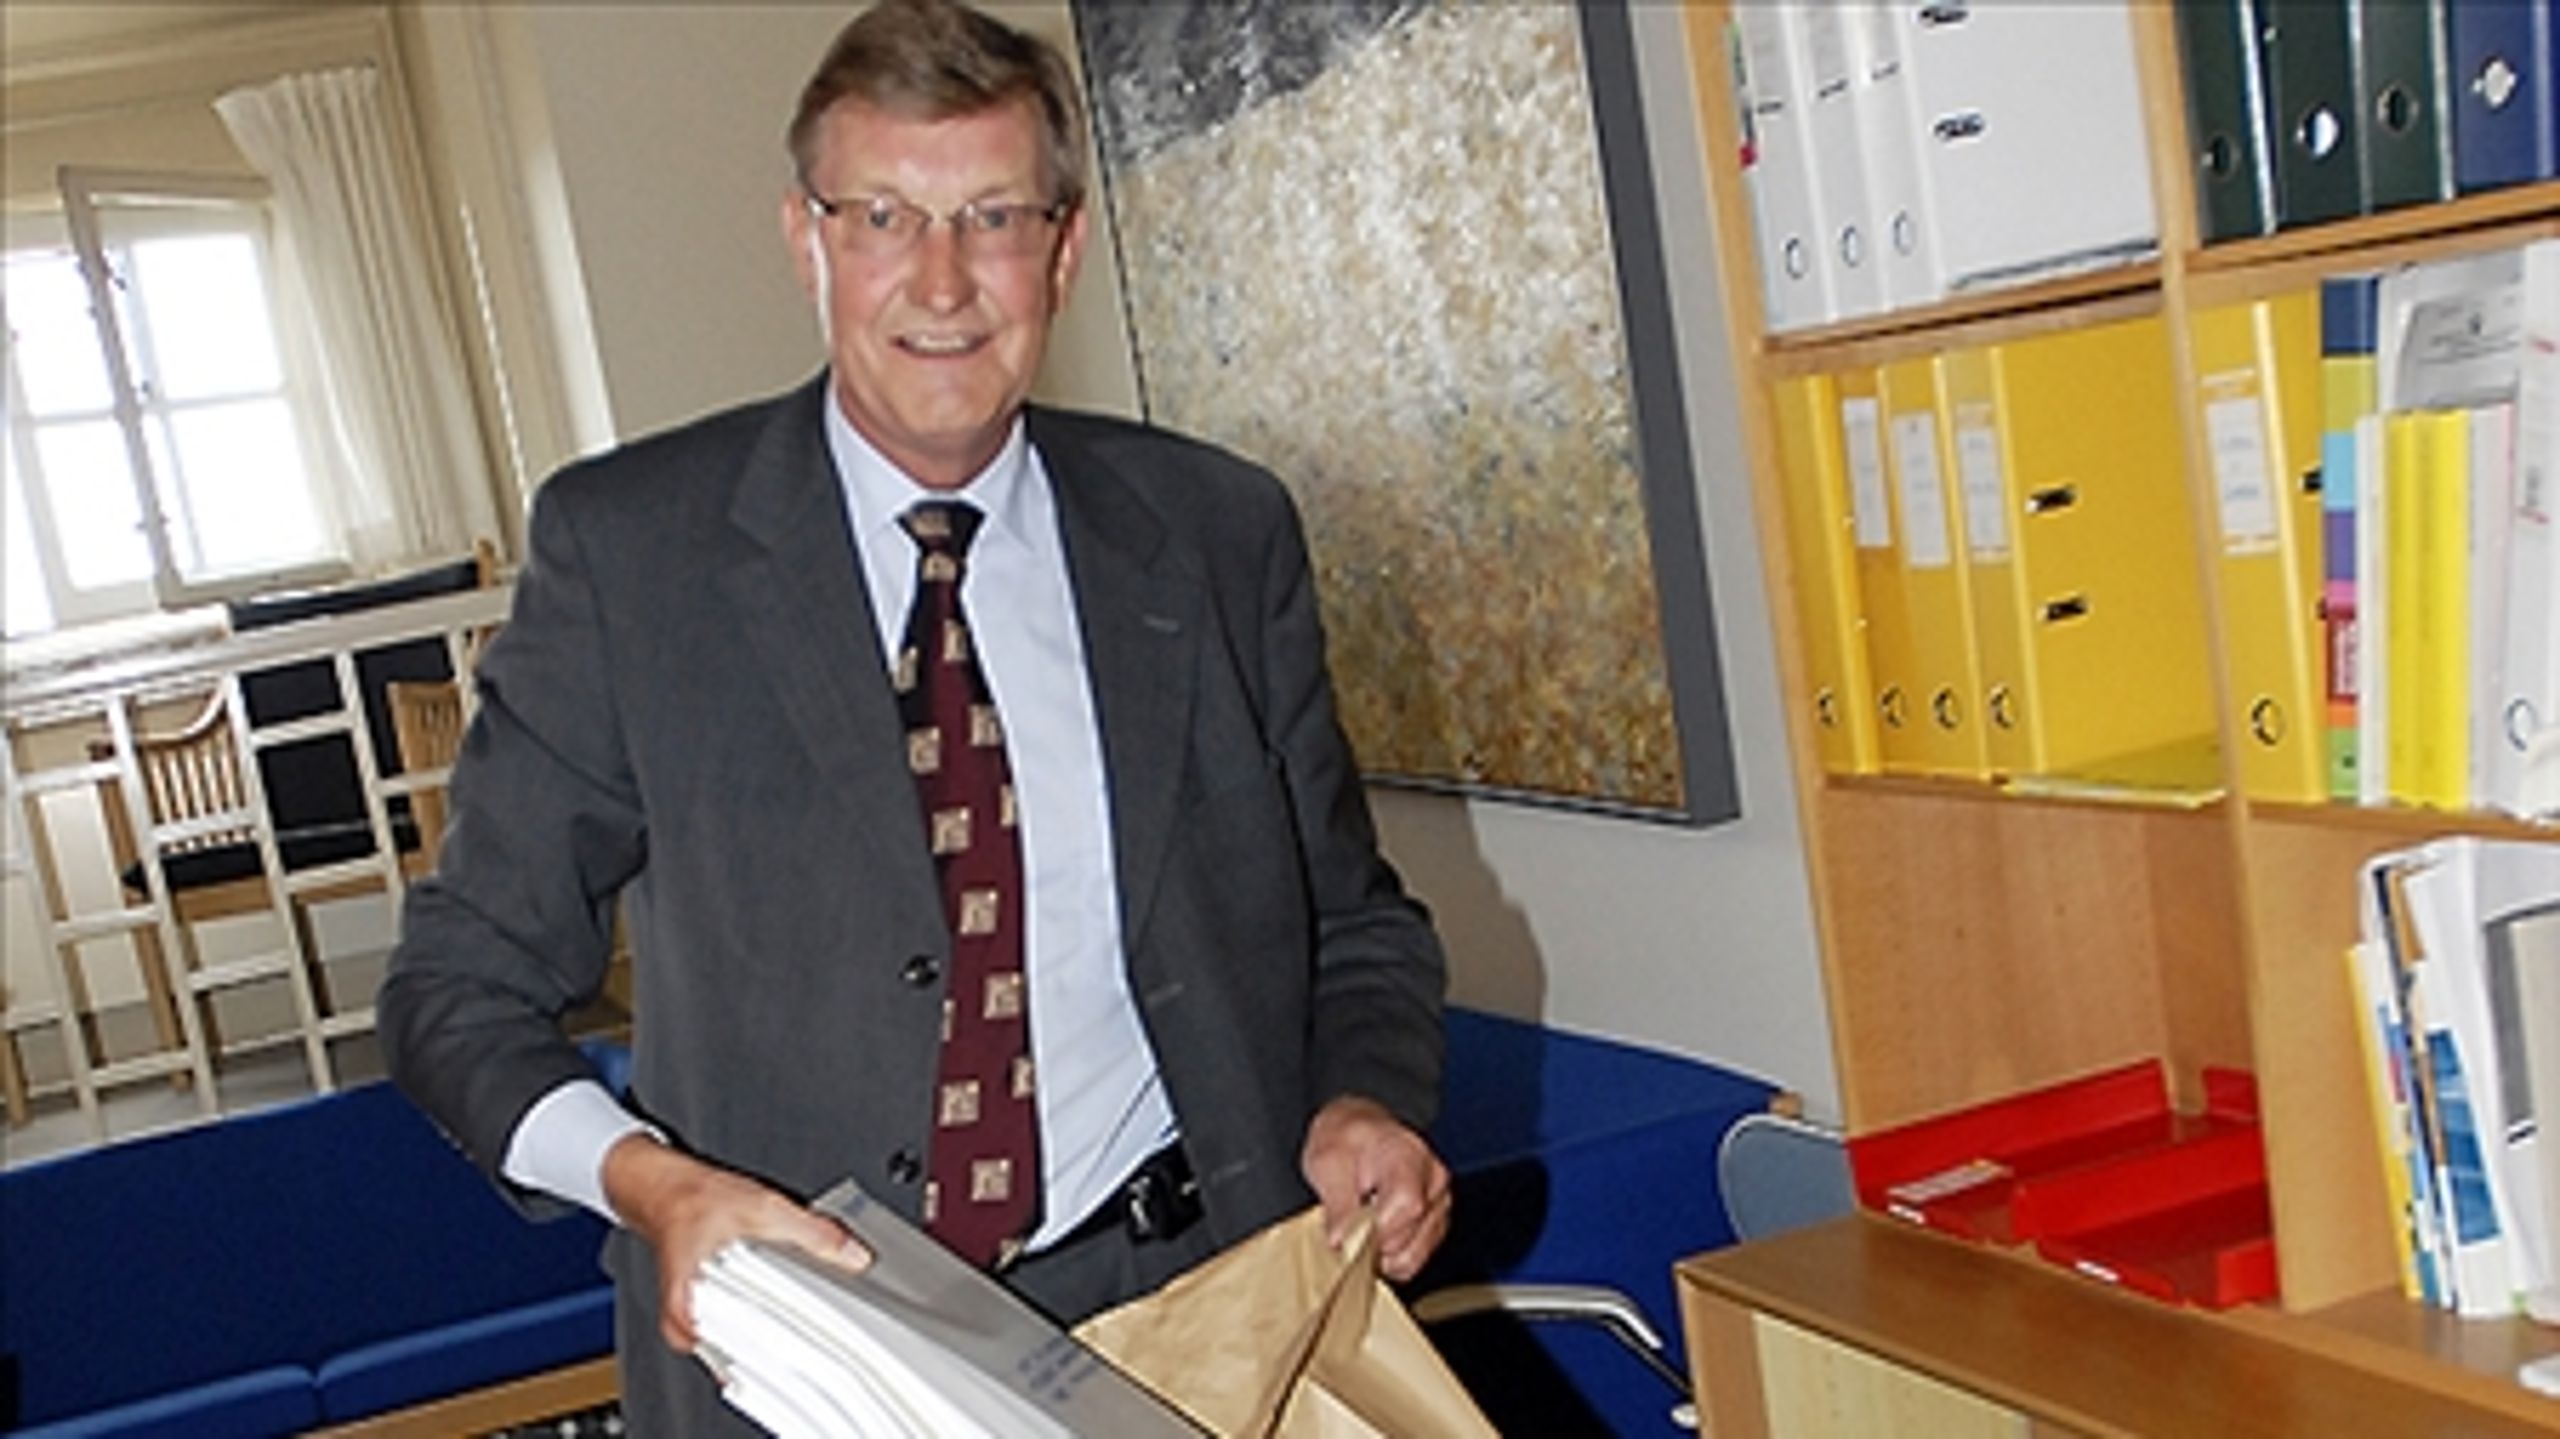 Tidligere skatteminister Ole Stavad rydder sit kontor i oktober 2007 - hans tid som folketingsmedlem rinder ud ved valget 13. november. 